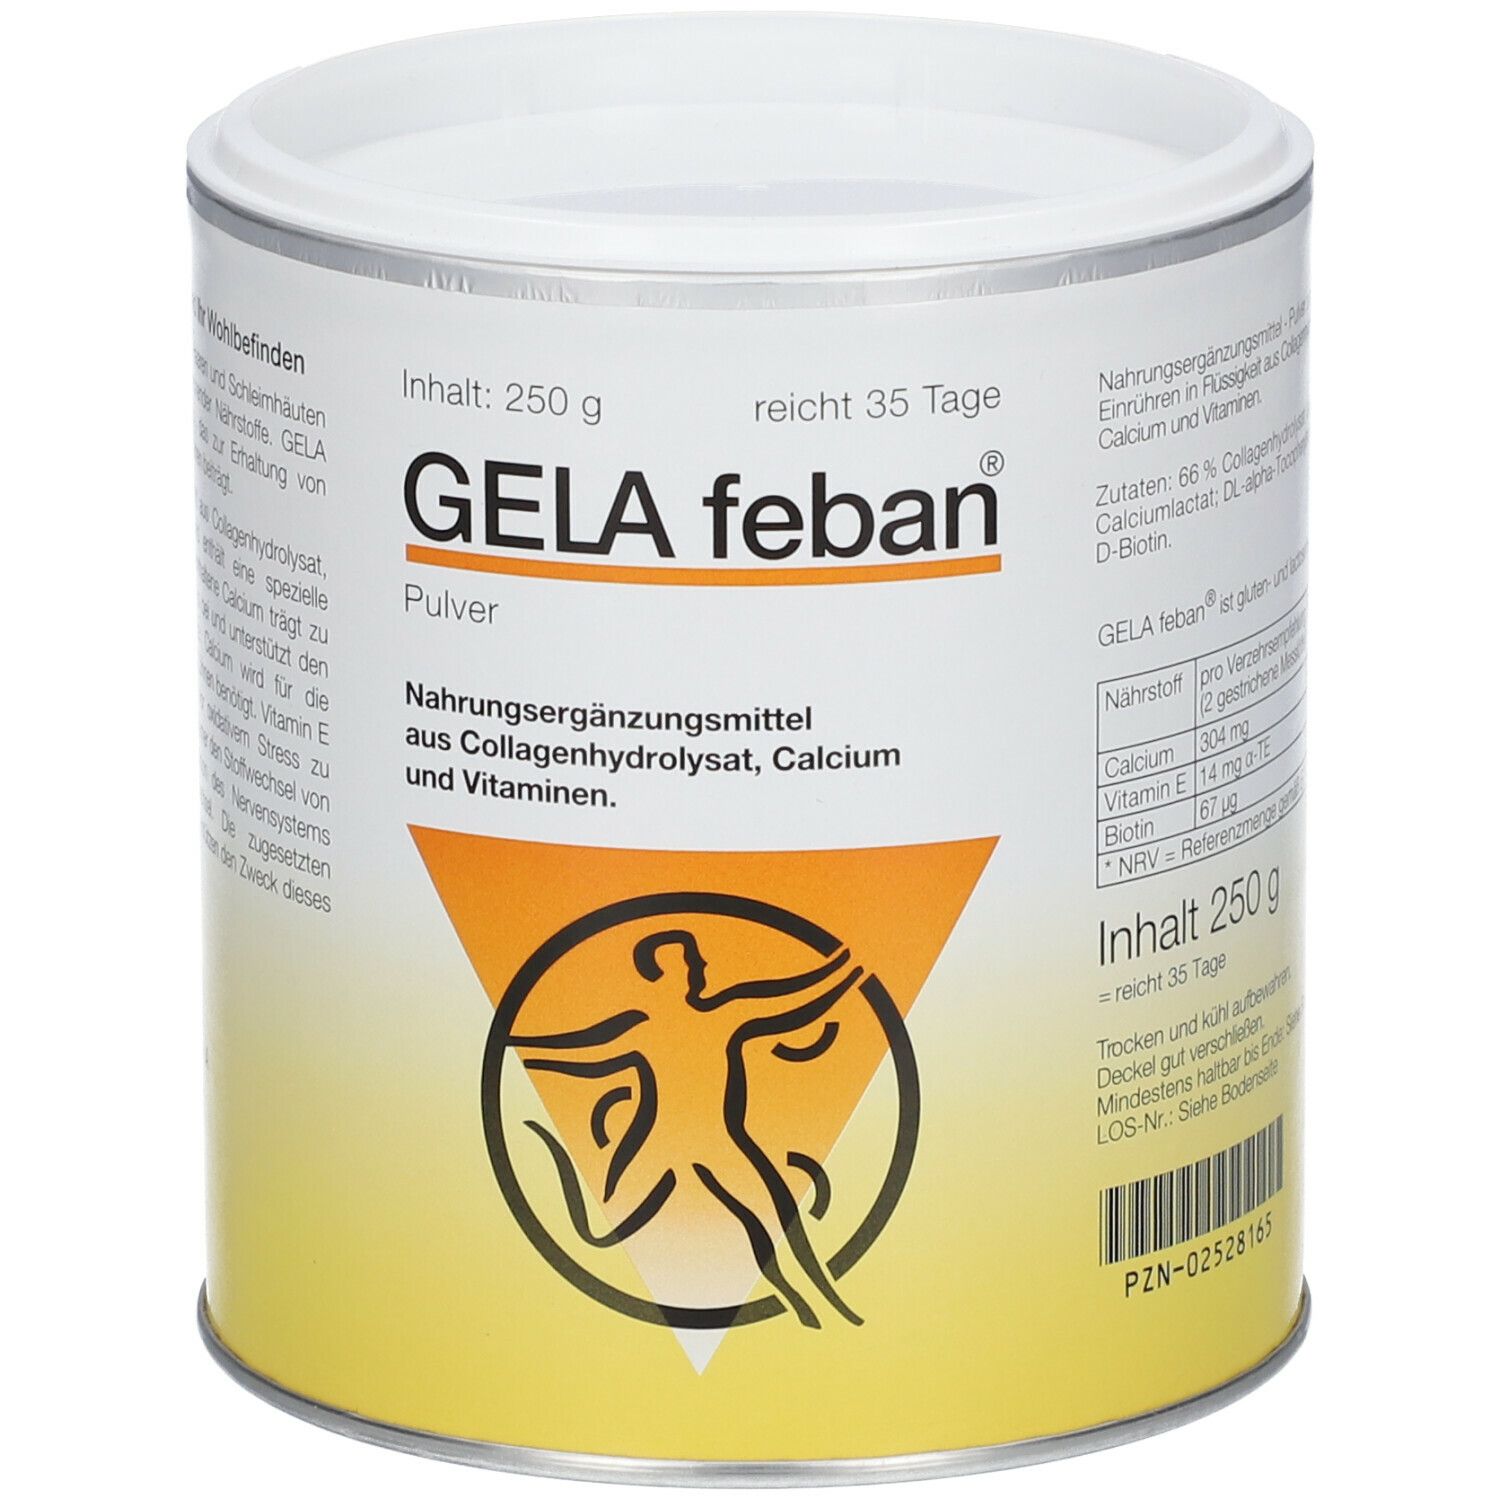 GELA feban® mit Collagenhydrolysat